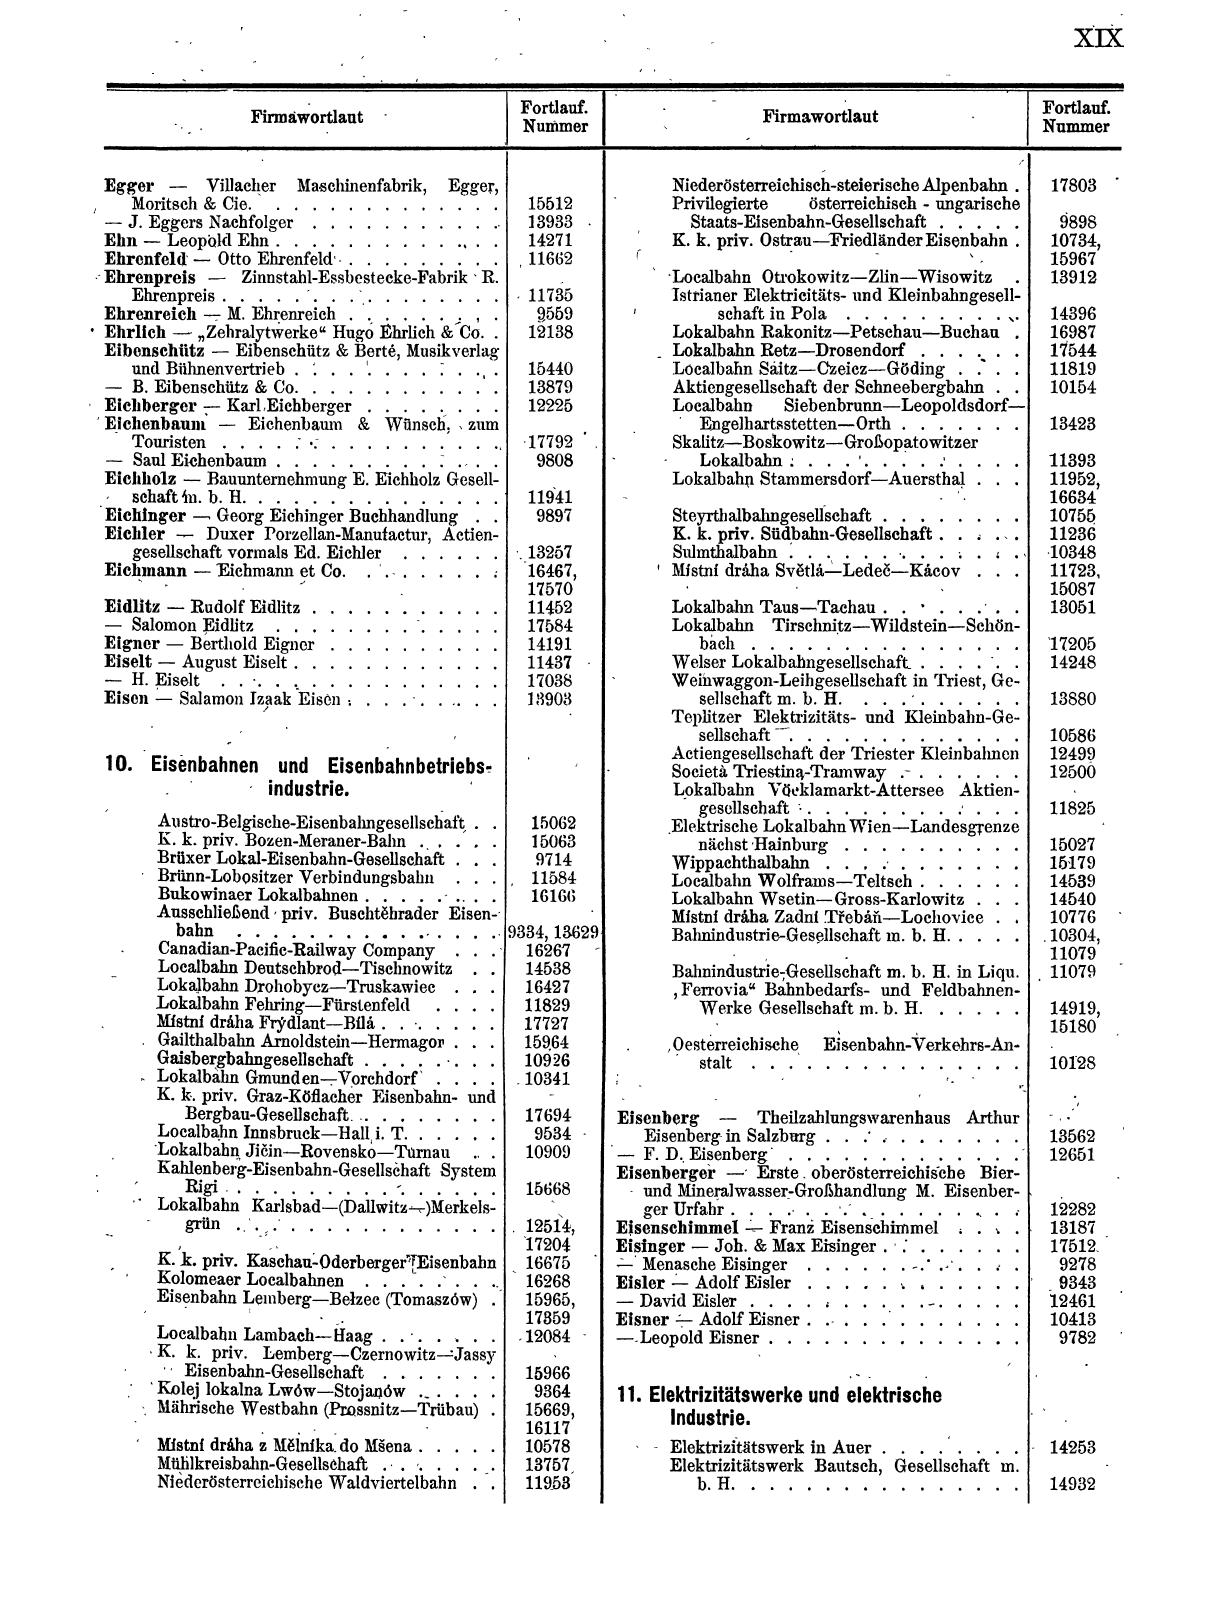 Zentralblatt für die Eintragungen in das Handelsregister 1913, Teil 2 - Seite 23